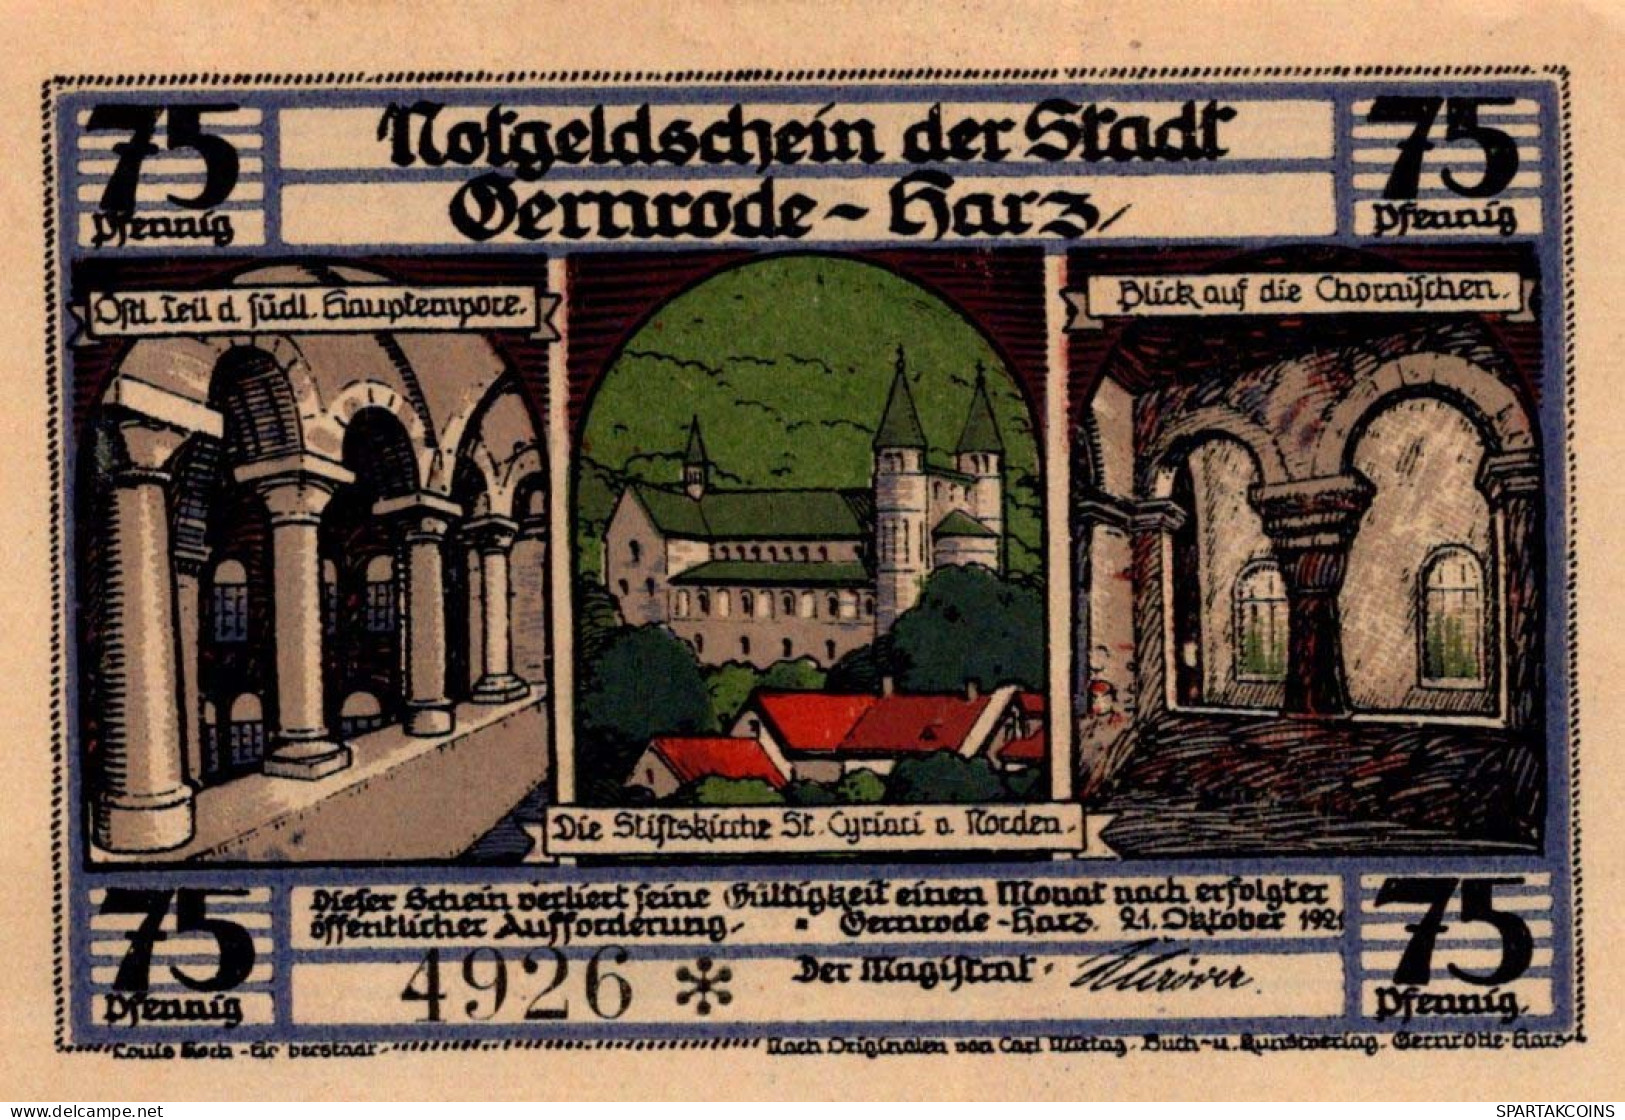 75 PFENNIG 1921 Stadt GERNRODE IM HARZ Anhalt UNC DEUTSCHLAND Notgeld #PH570 - [11] Local Banknote Issues